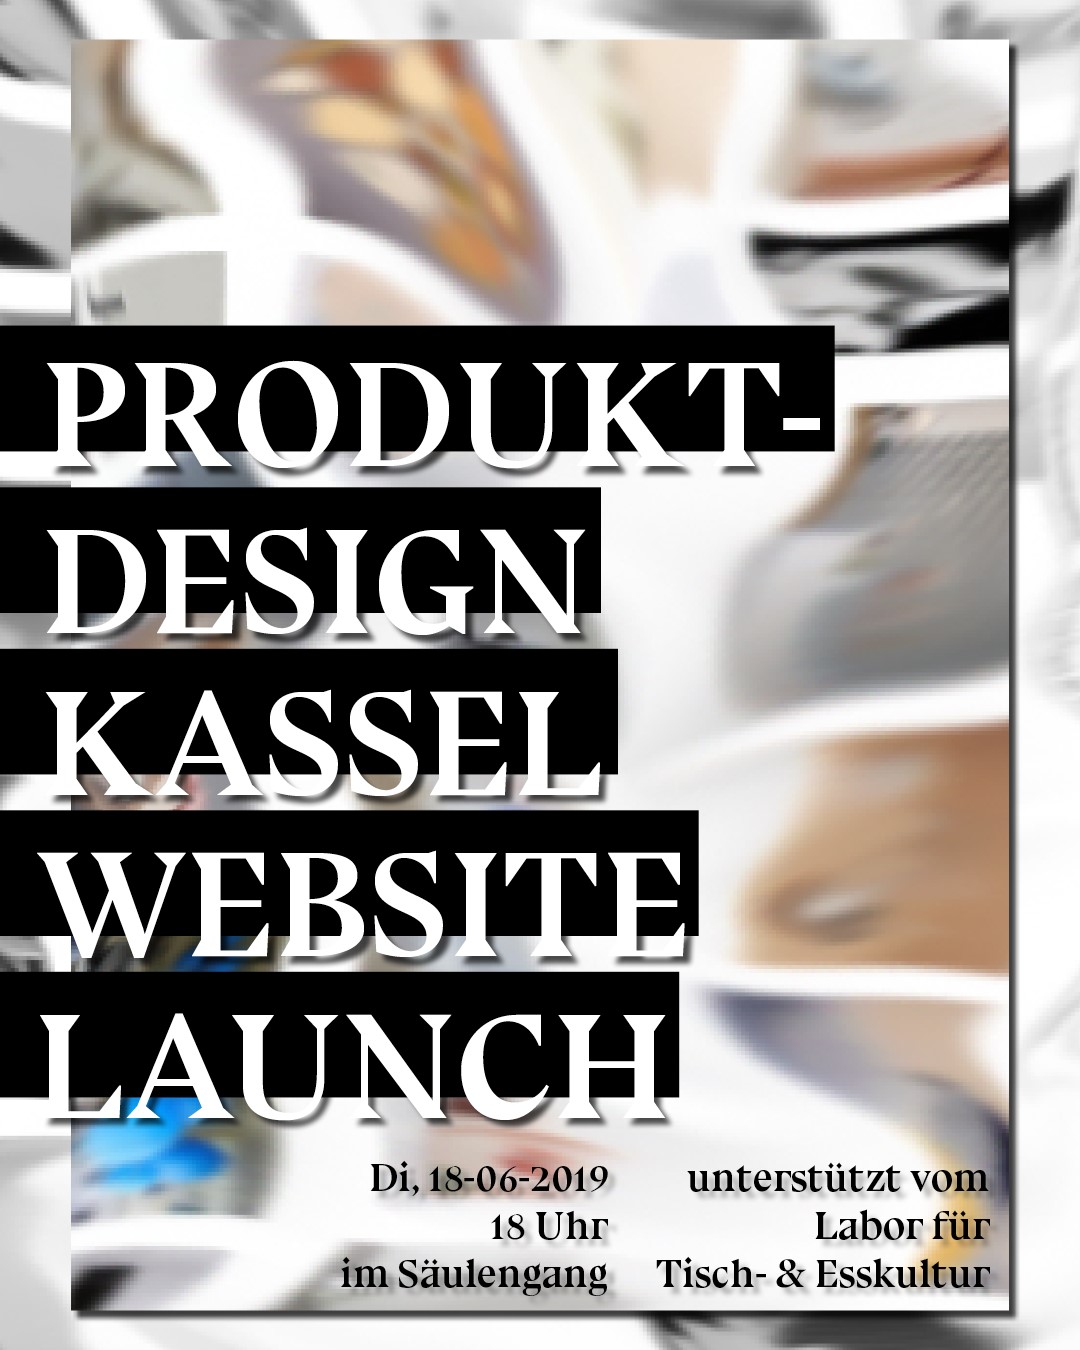 Website Launch: Produktdesign Kassel